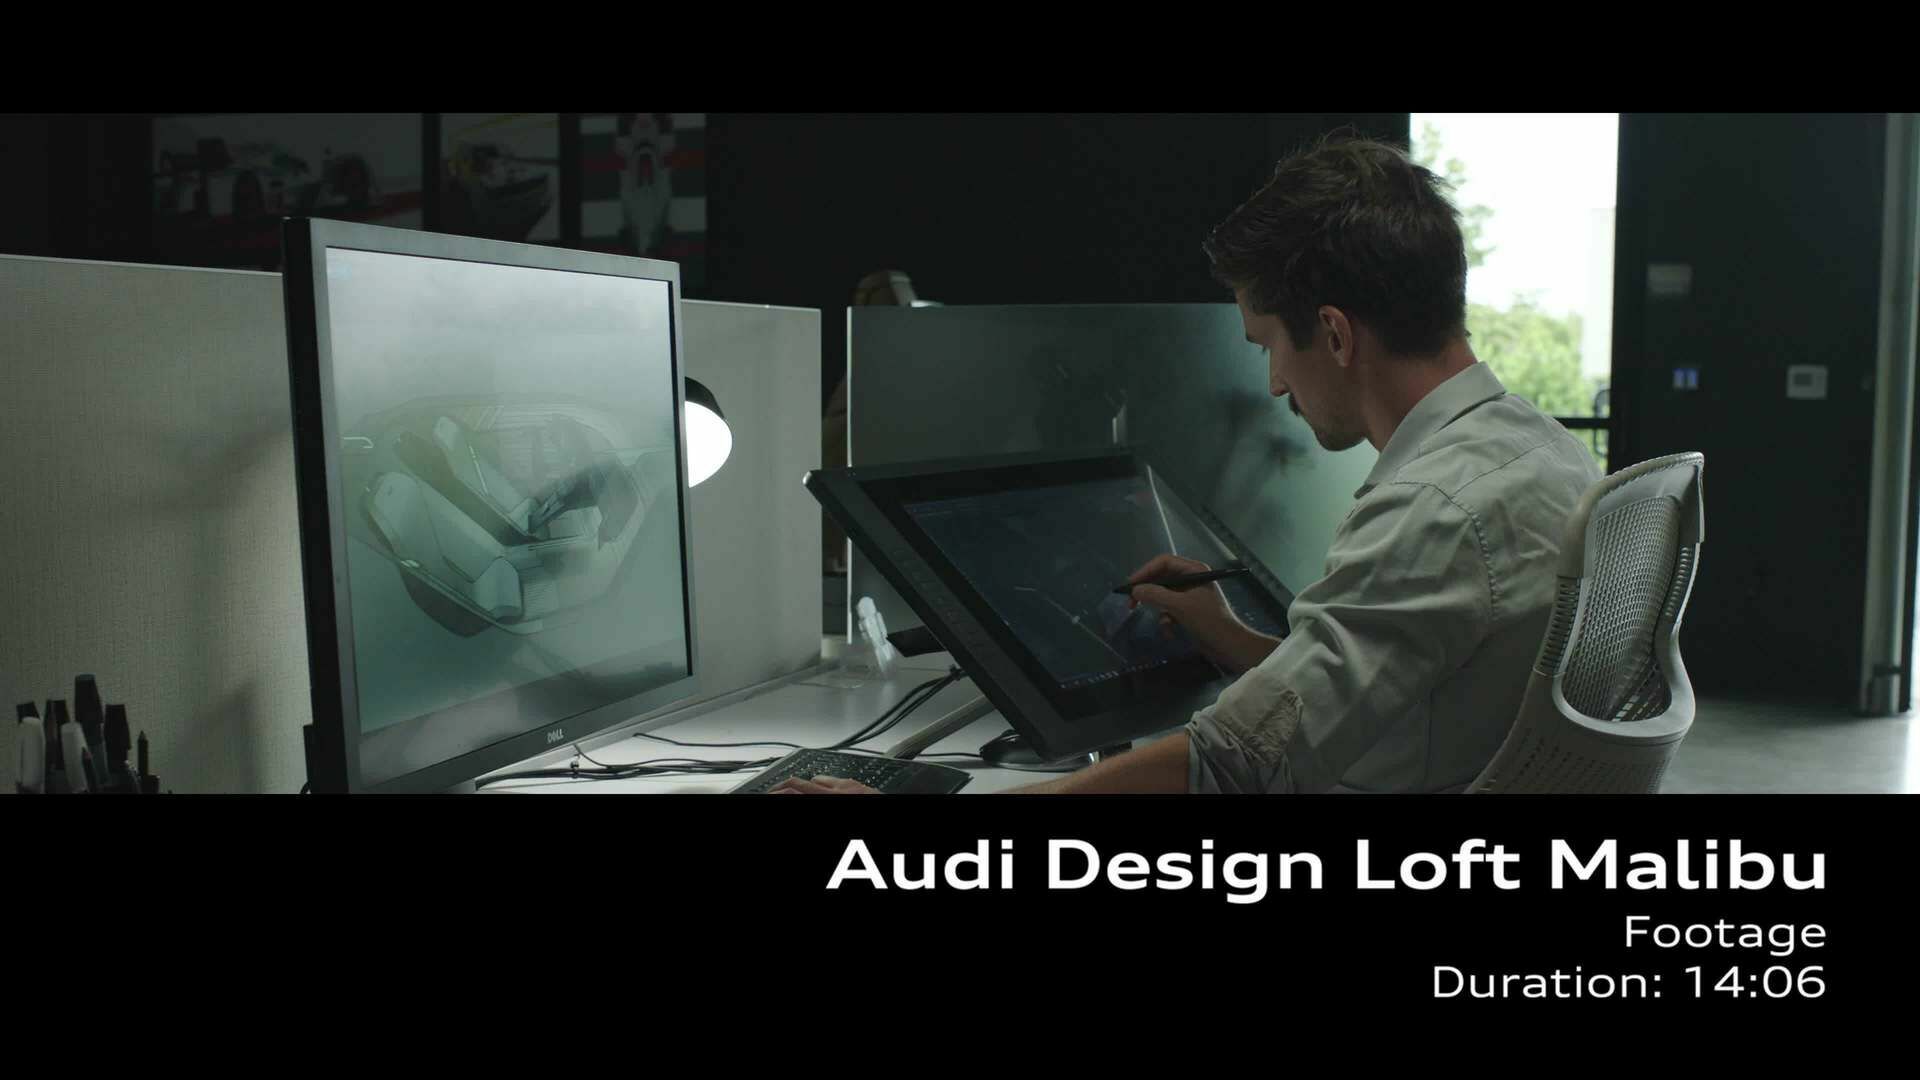 Footage: Audi Design Loft Malibu